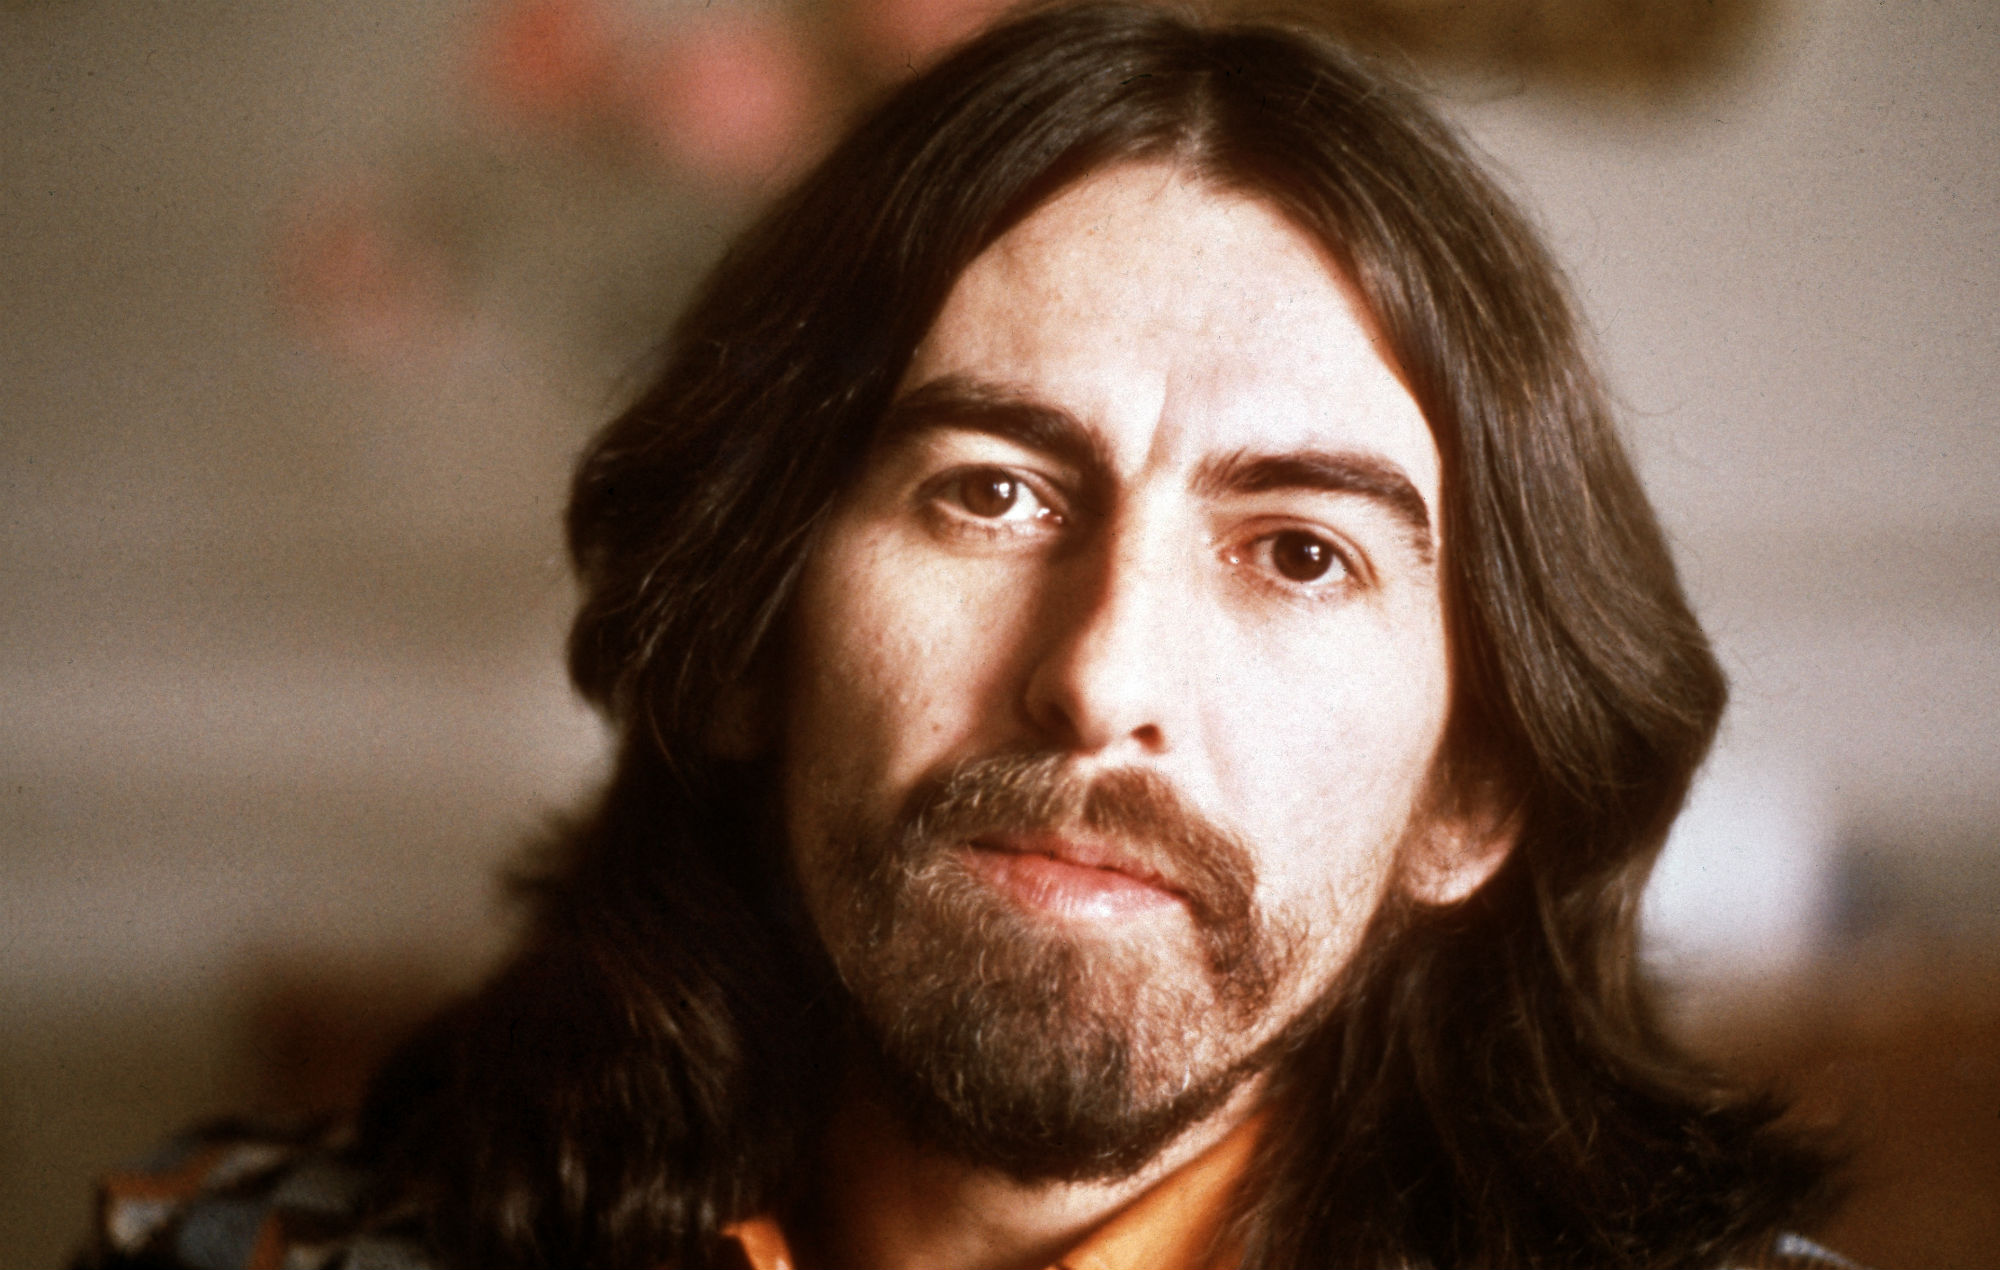 George Harrison's estate lanza una nueva mezcla estéreo de 'All Things Must Pass' para marcar el 50 aniversario del álbum.